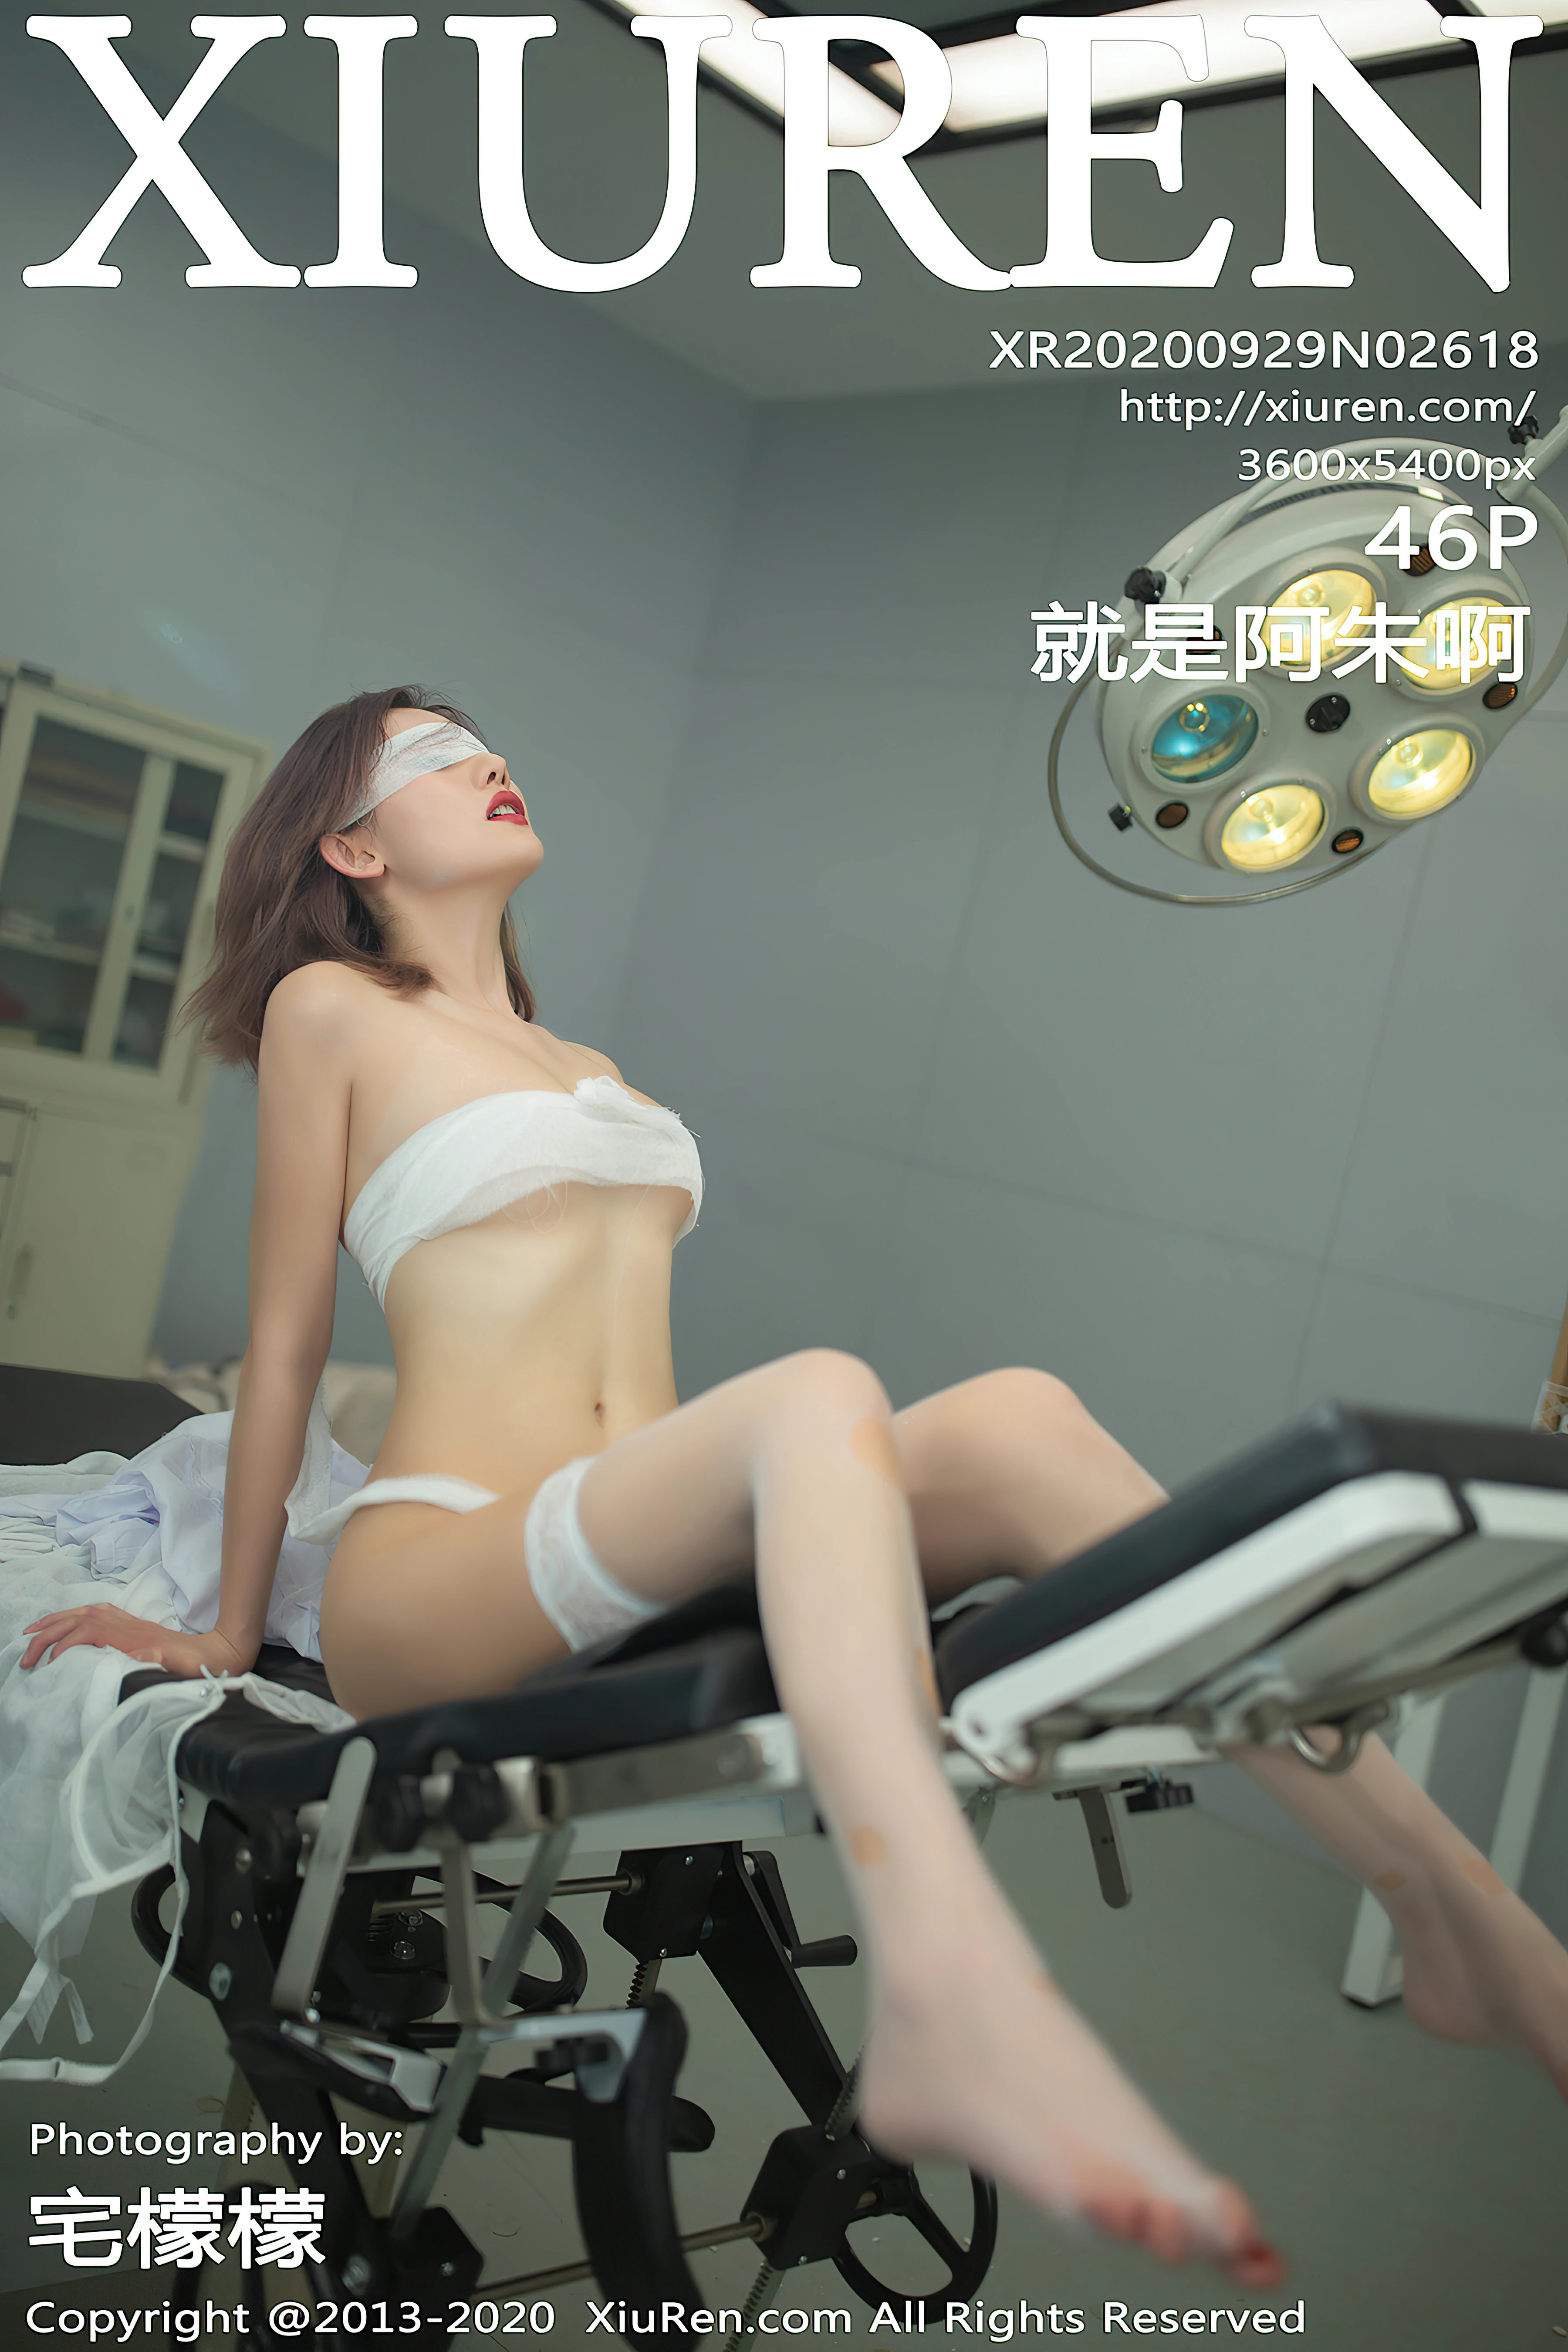 [XiuRen秀人网]XR20200929N02618 性感女护士 就是阿朱啊 白色情趣内衣私房写真集,000001